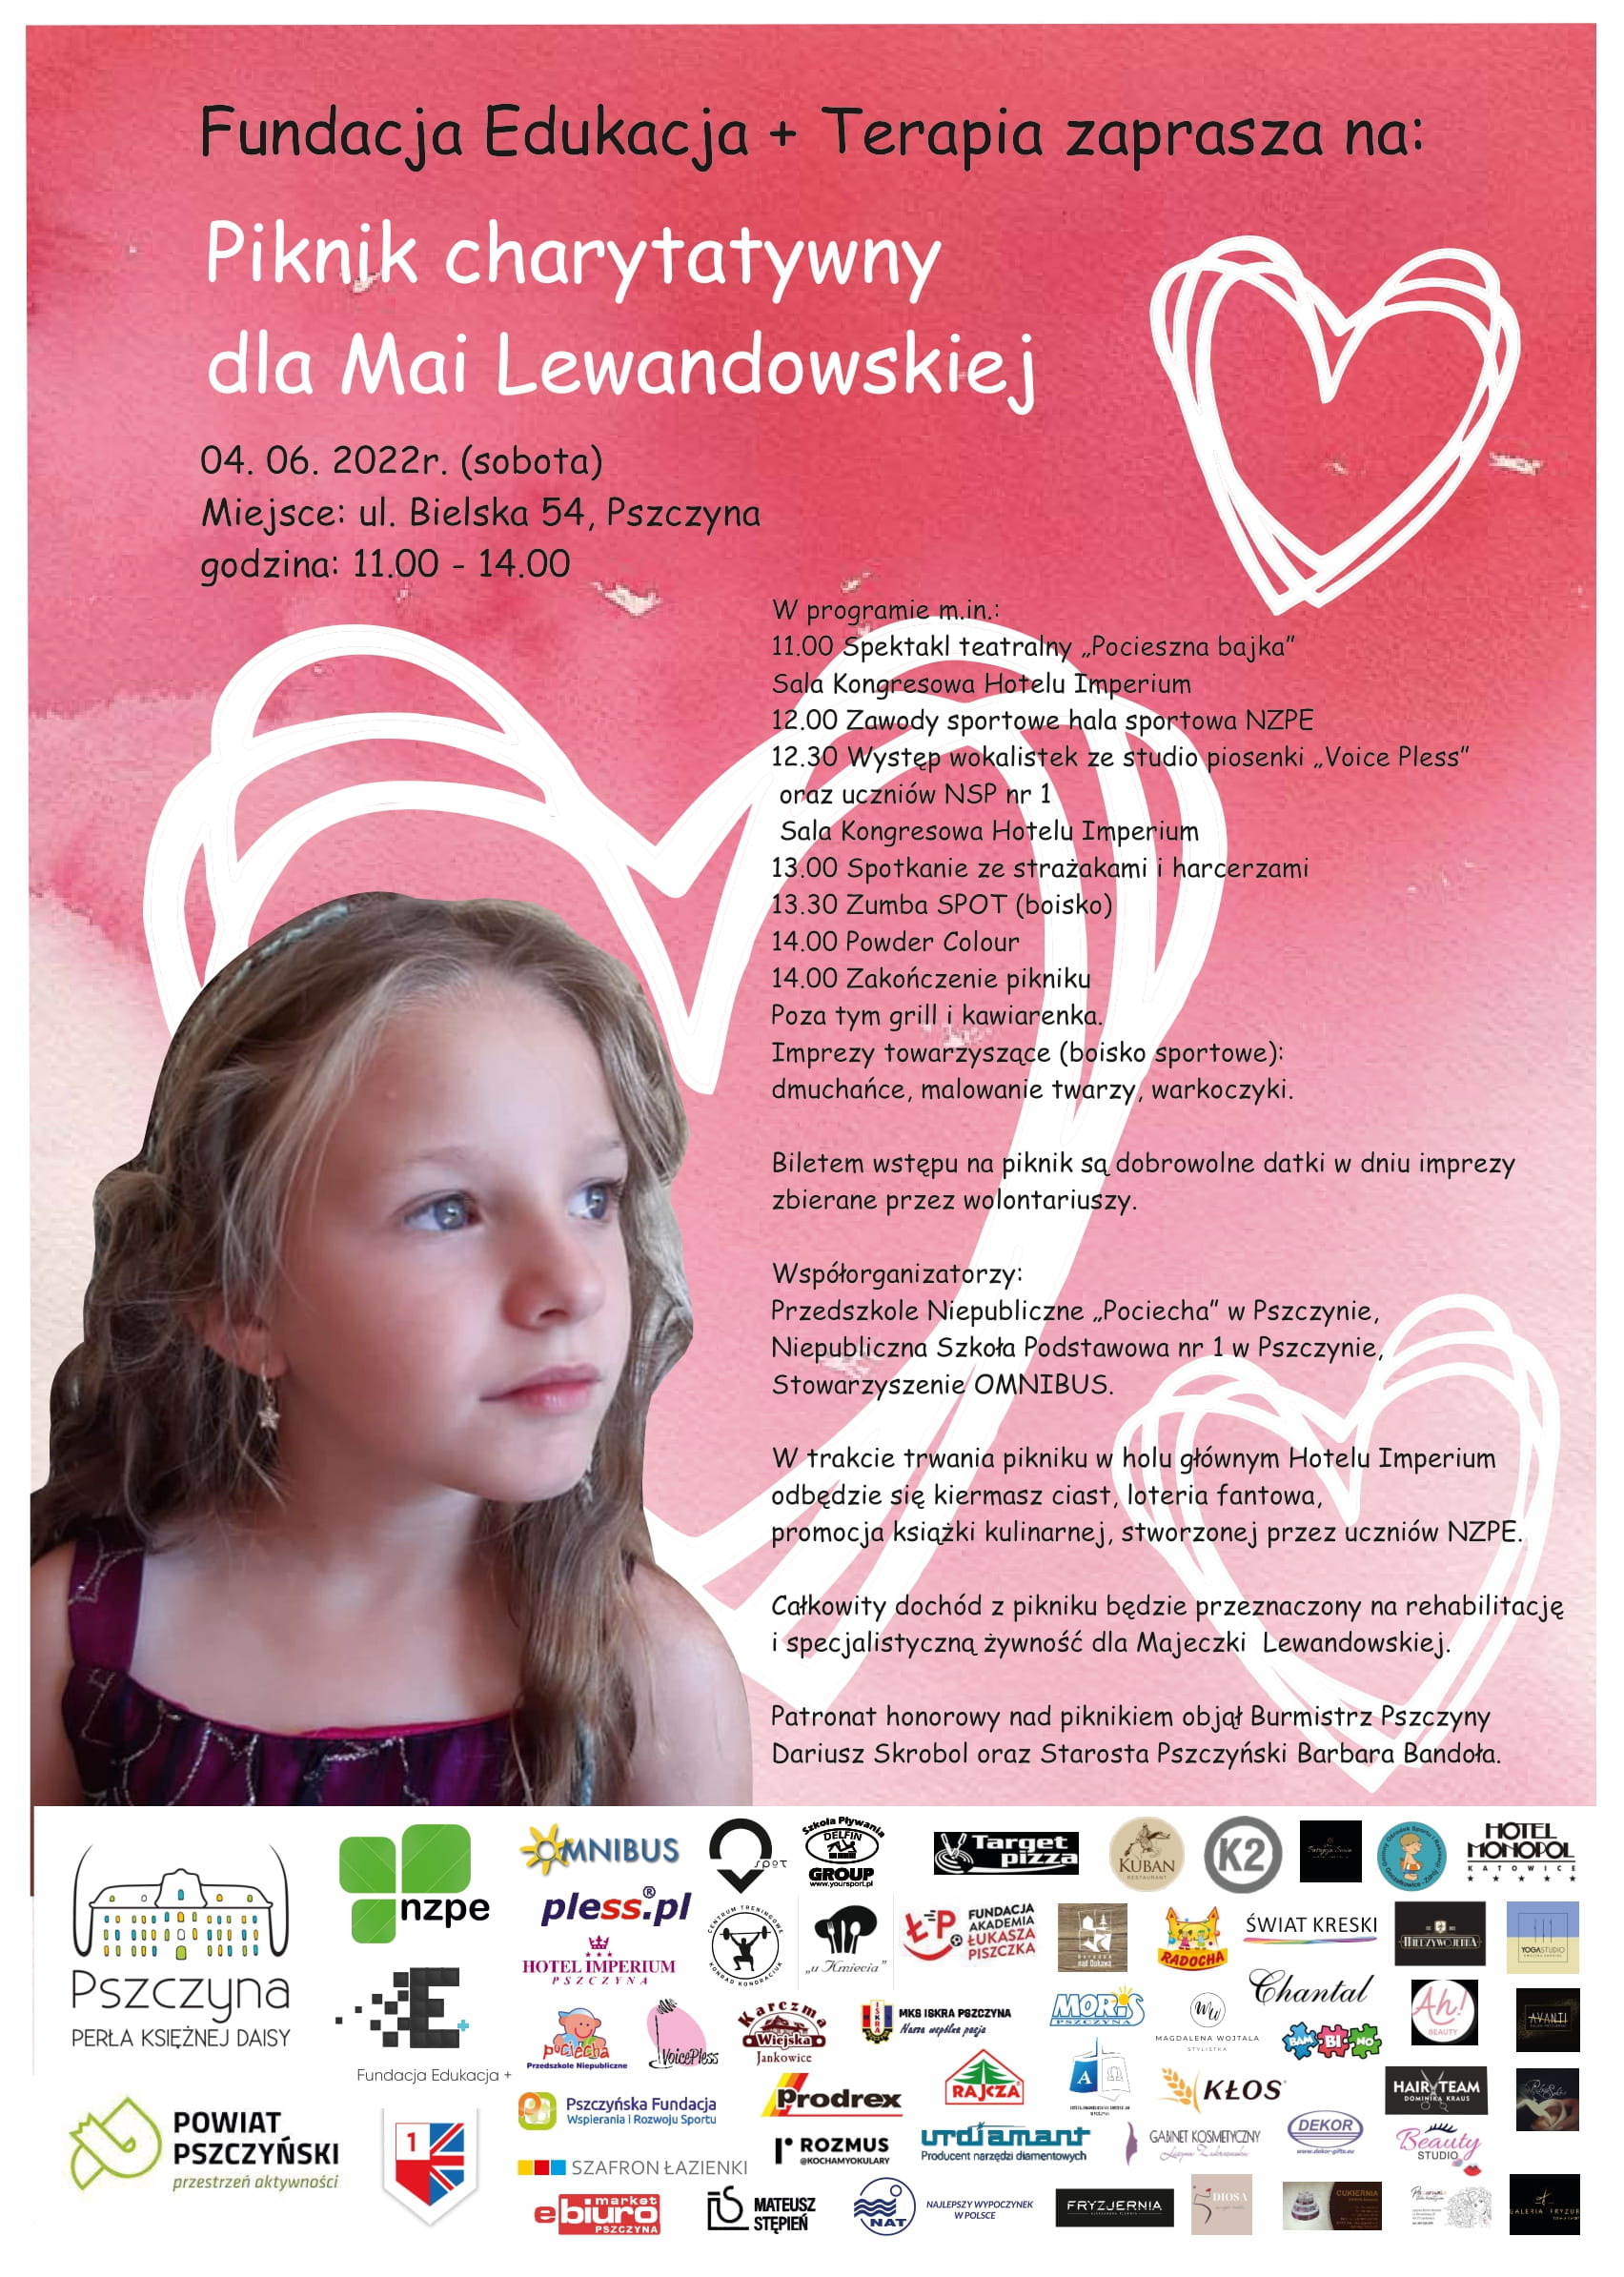 Piknik charytatywny dla Mai Lewandowskiej